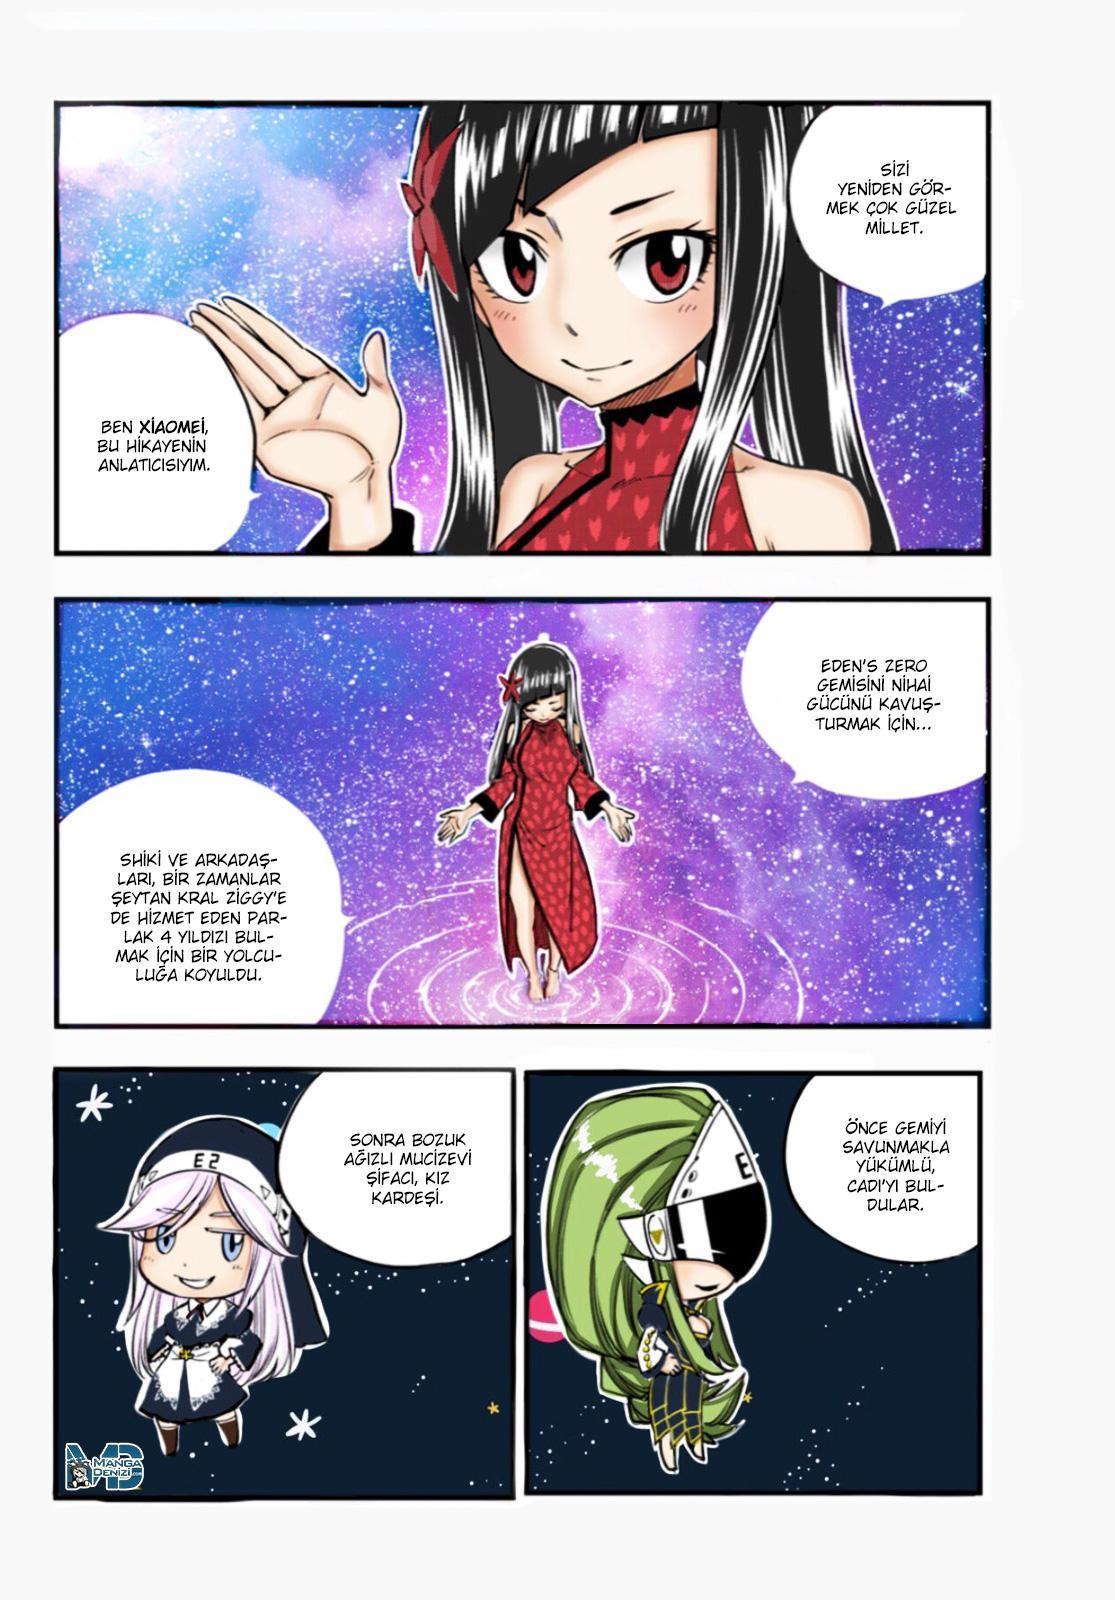 Eden's Zero mangasının 031 bölümünün 3. sayfasını okuyorsunuz.